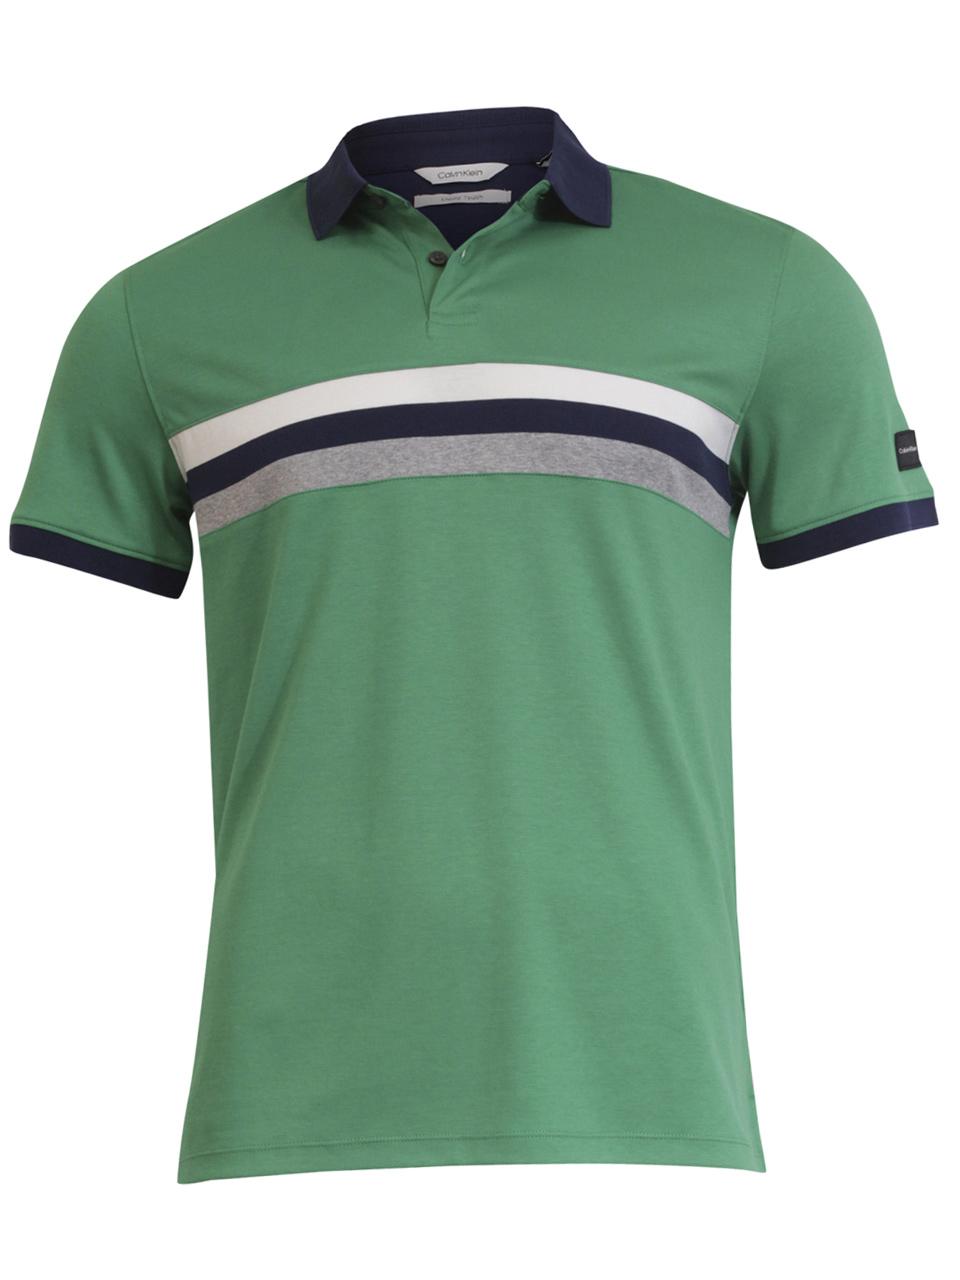 Calvin Klein Men's Liquid Touch Colorblock Short Sleeve Cotton Polo Shirt